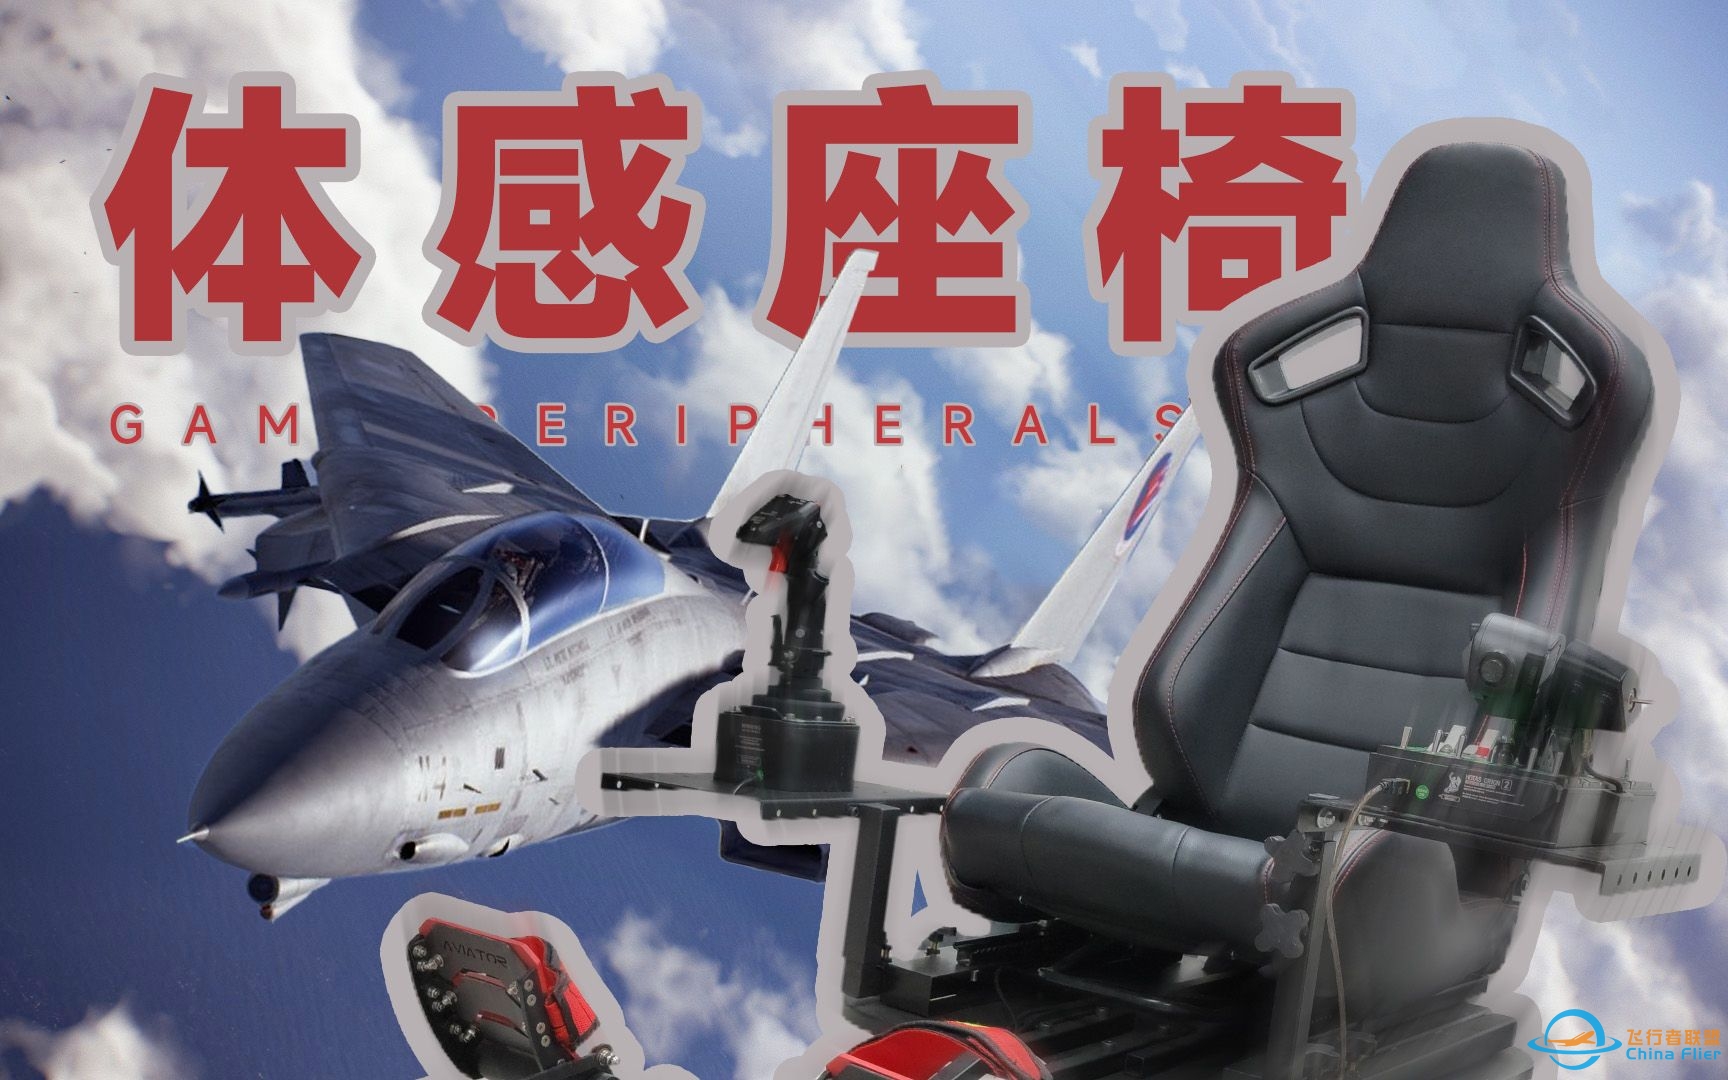 【富哥装备】来体验一张会动的飞行模拟凳子 | InfuDeck VR体感模拟器-3575 